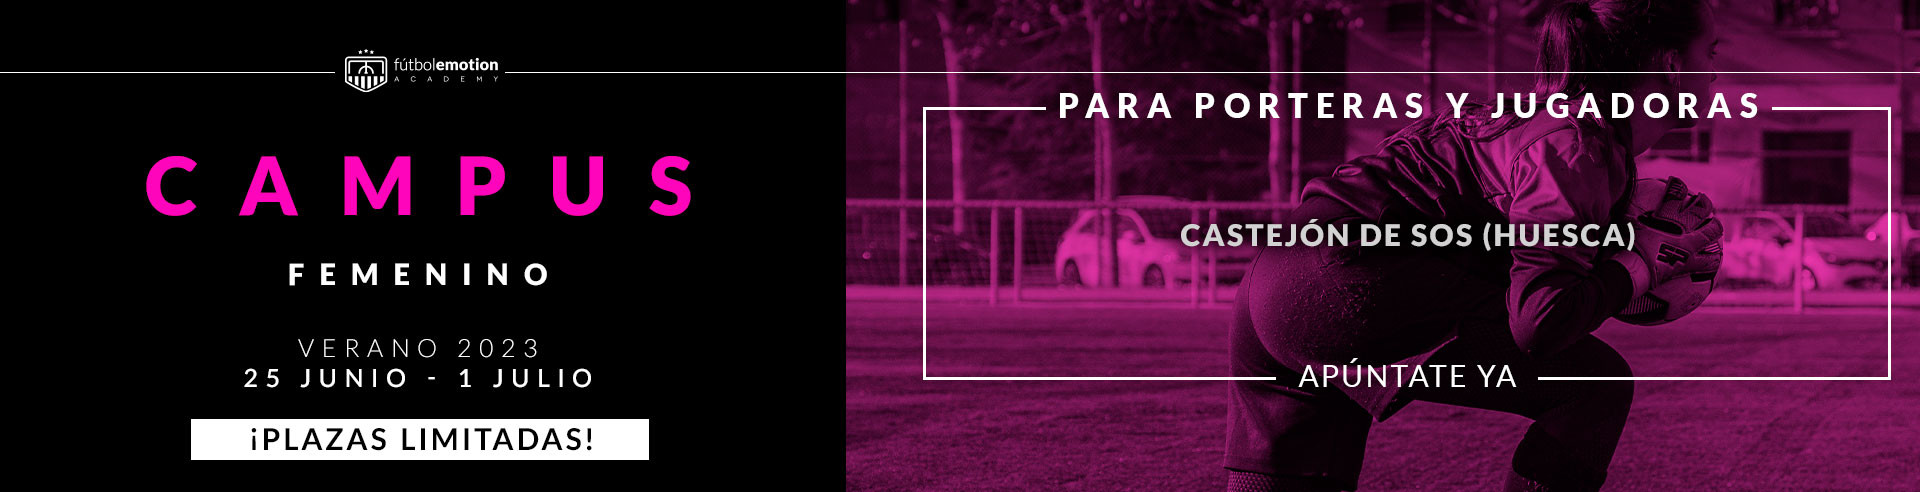 Campus de Verano Femenino para porteras y jugadoras